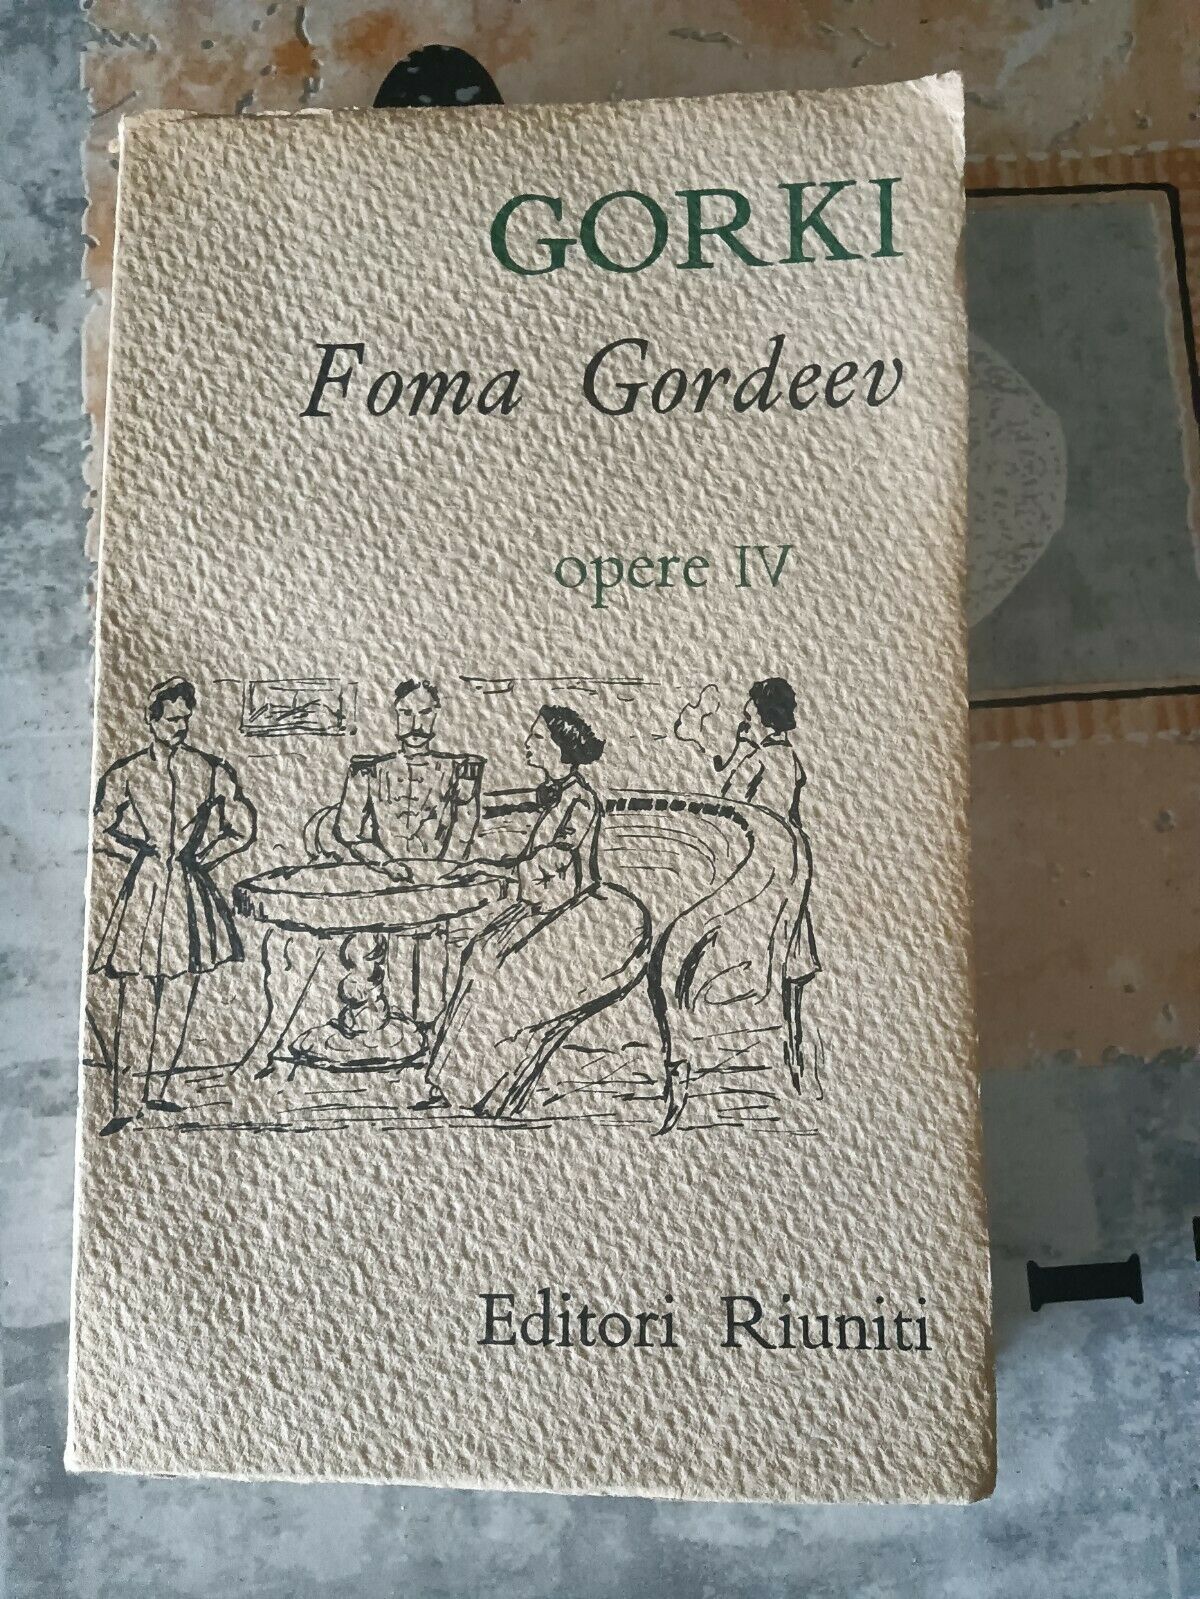 Foma Gordeev |Ventisei e una | Bollicine | Il contadino. Opere IV (I Ed.)  - Gorki M.